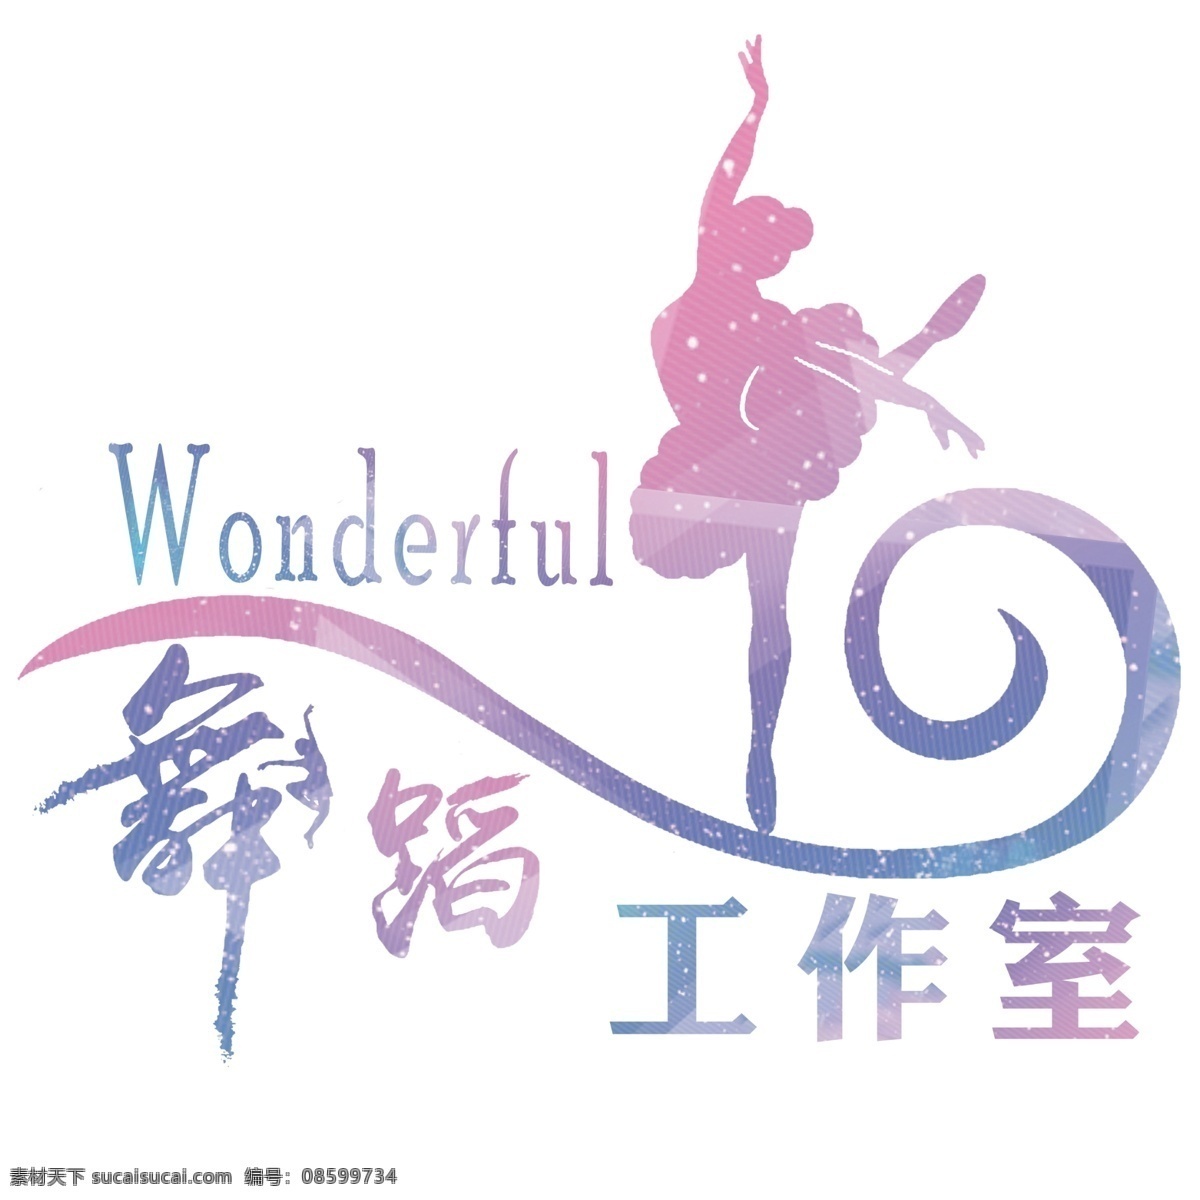 舞蹈 工作室 logo 舞蹈工作室 wonderfui